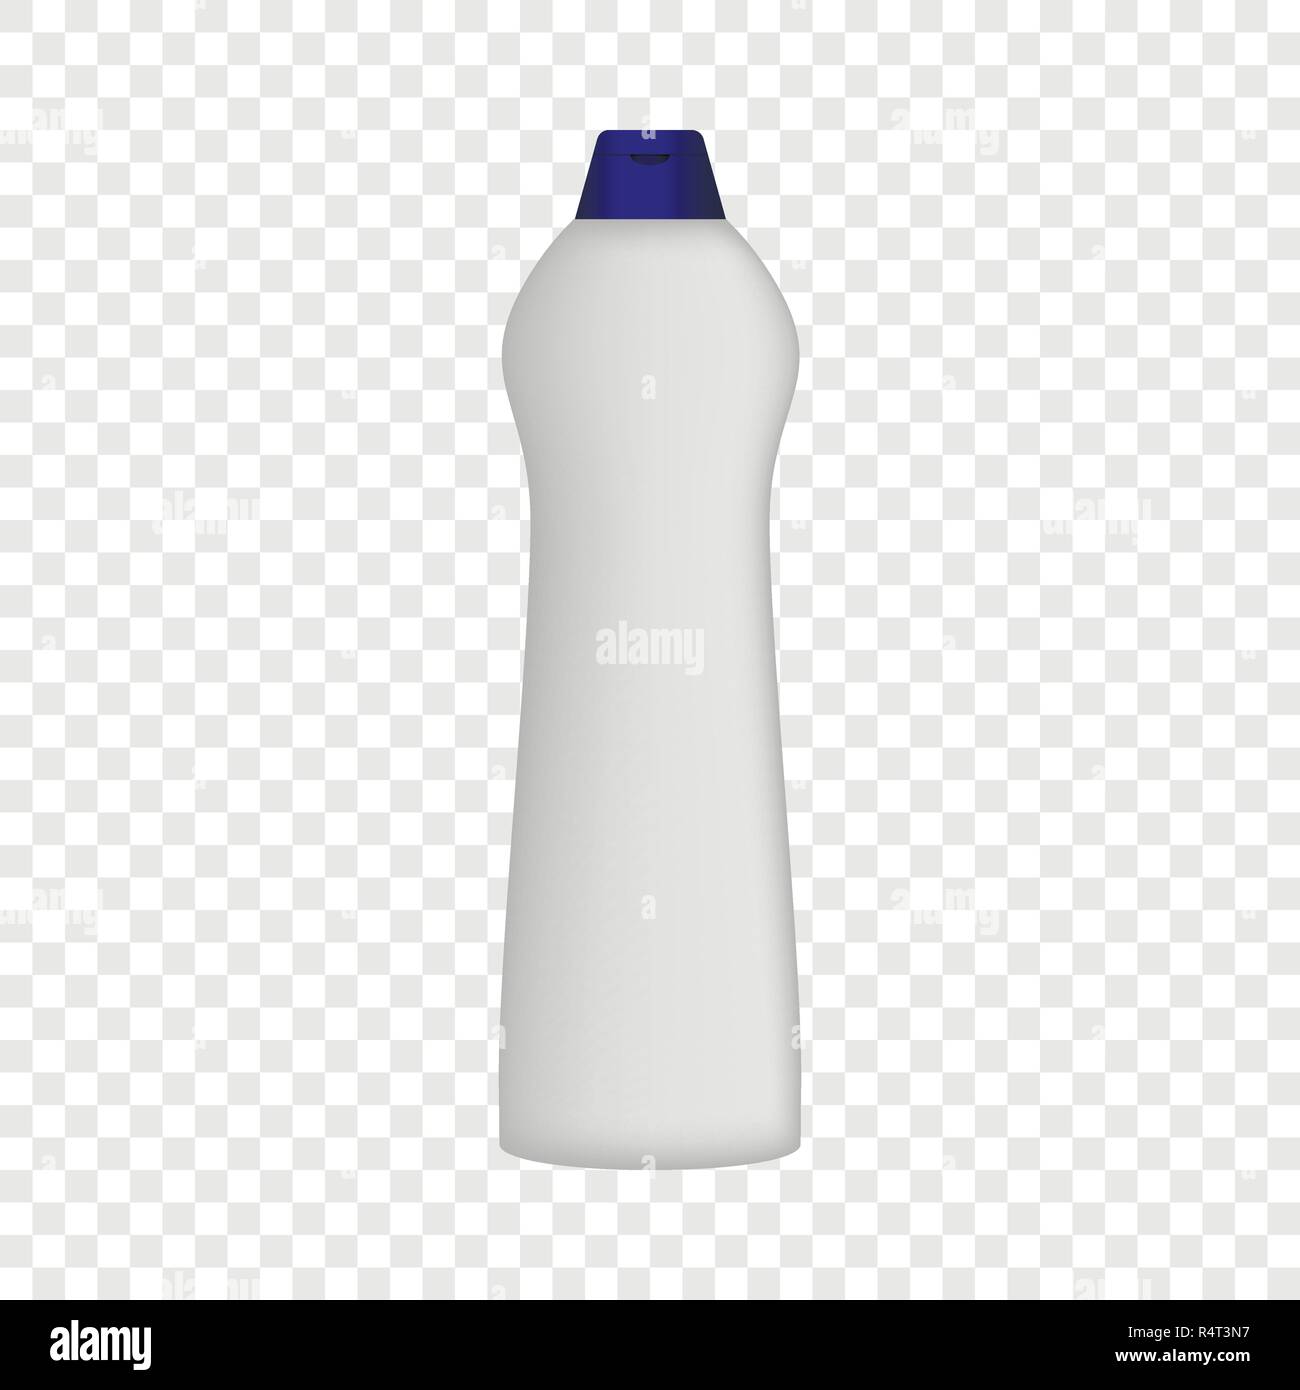 Download Detergent Bottle Mockup Realistic Illustration Of Detergent Bottle Vector Mockup For On Transparent Background Stock Vector Image Art Alamy